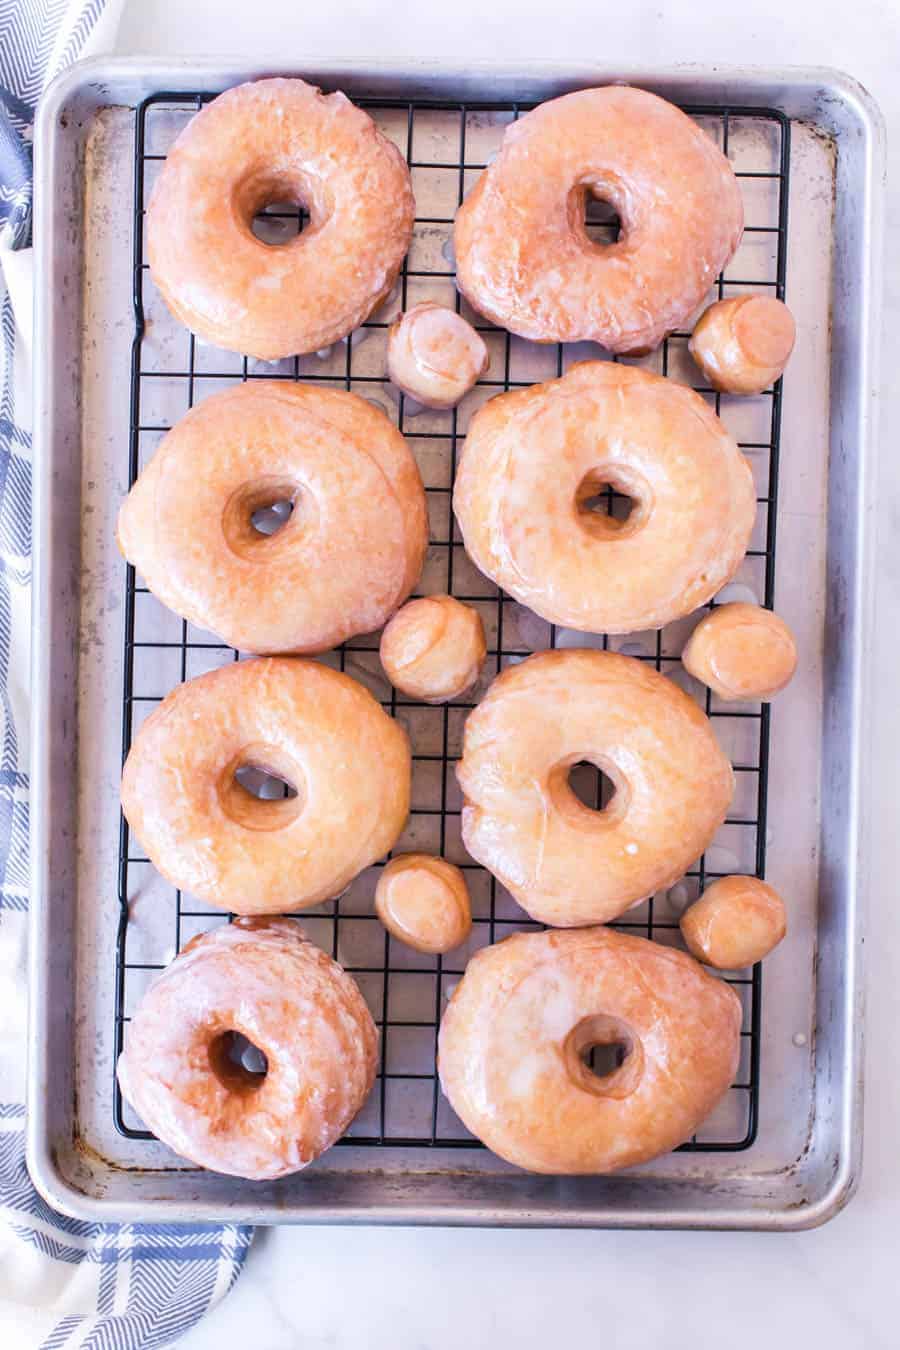 Baking rack full of homemade glazed donuts.